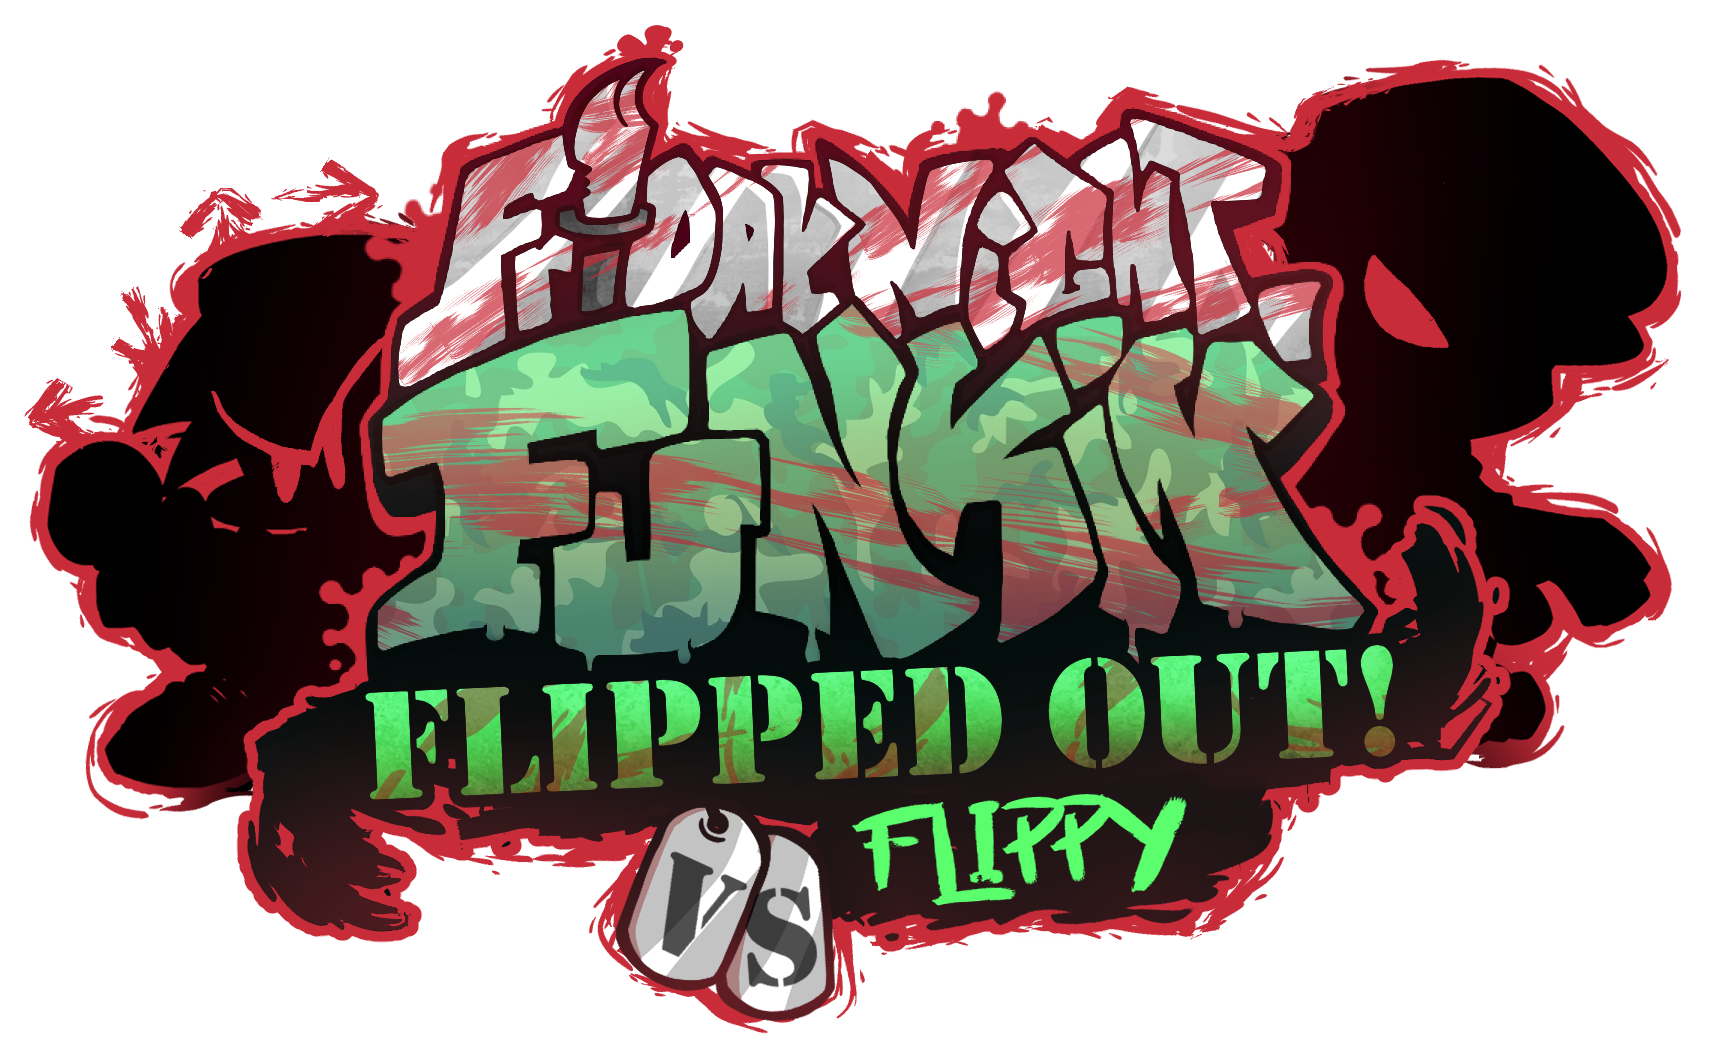 Friday Night Funkin' Modding Plus, Funkipedia Mods Wiki